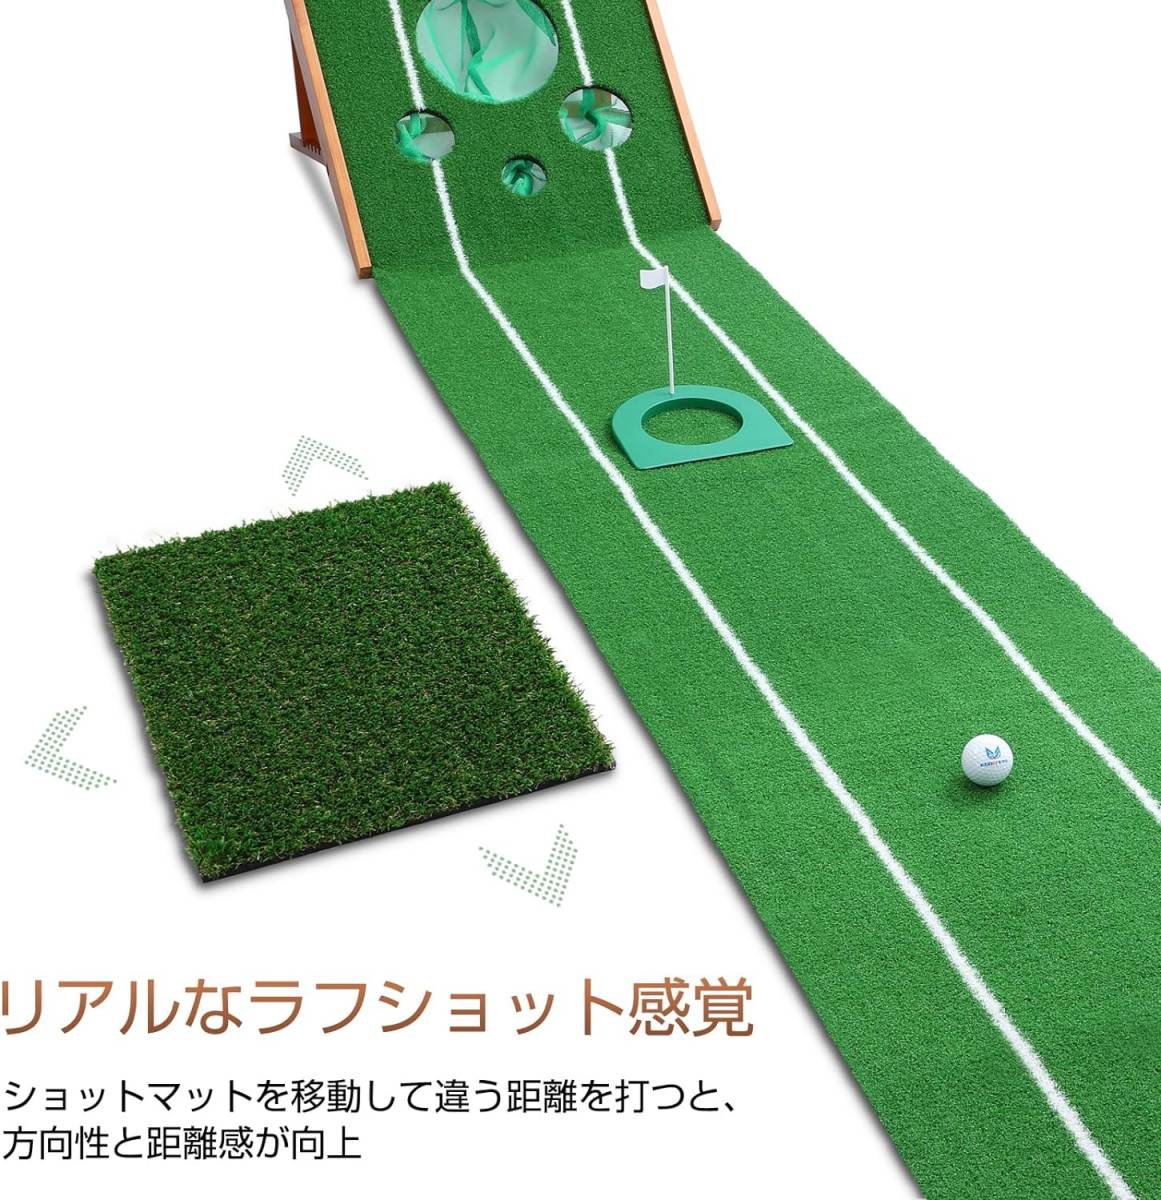 【 高級天然木素材 】EGOOIEYE ゴルフマット パター練習マット アプローチ練習 ショットマット付_画像4